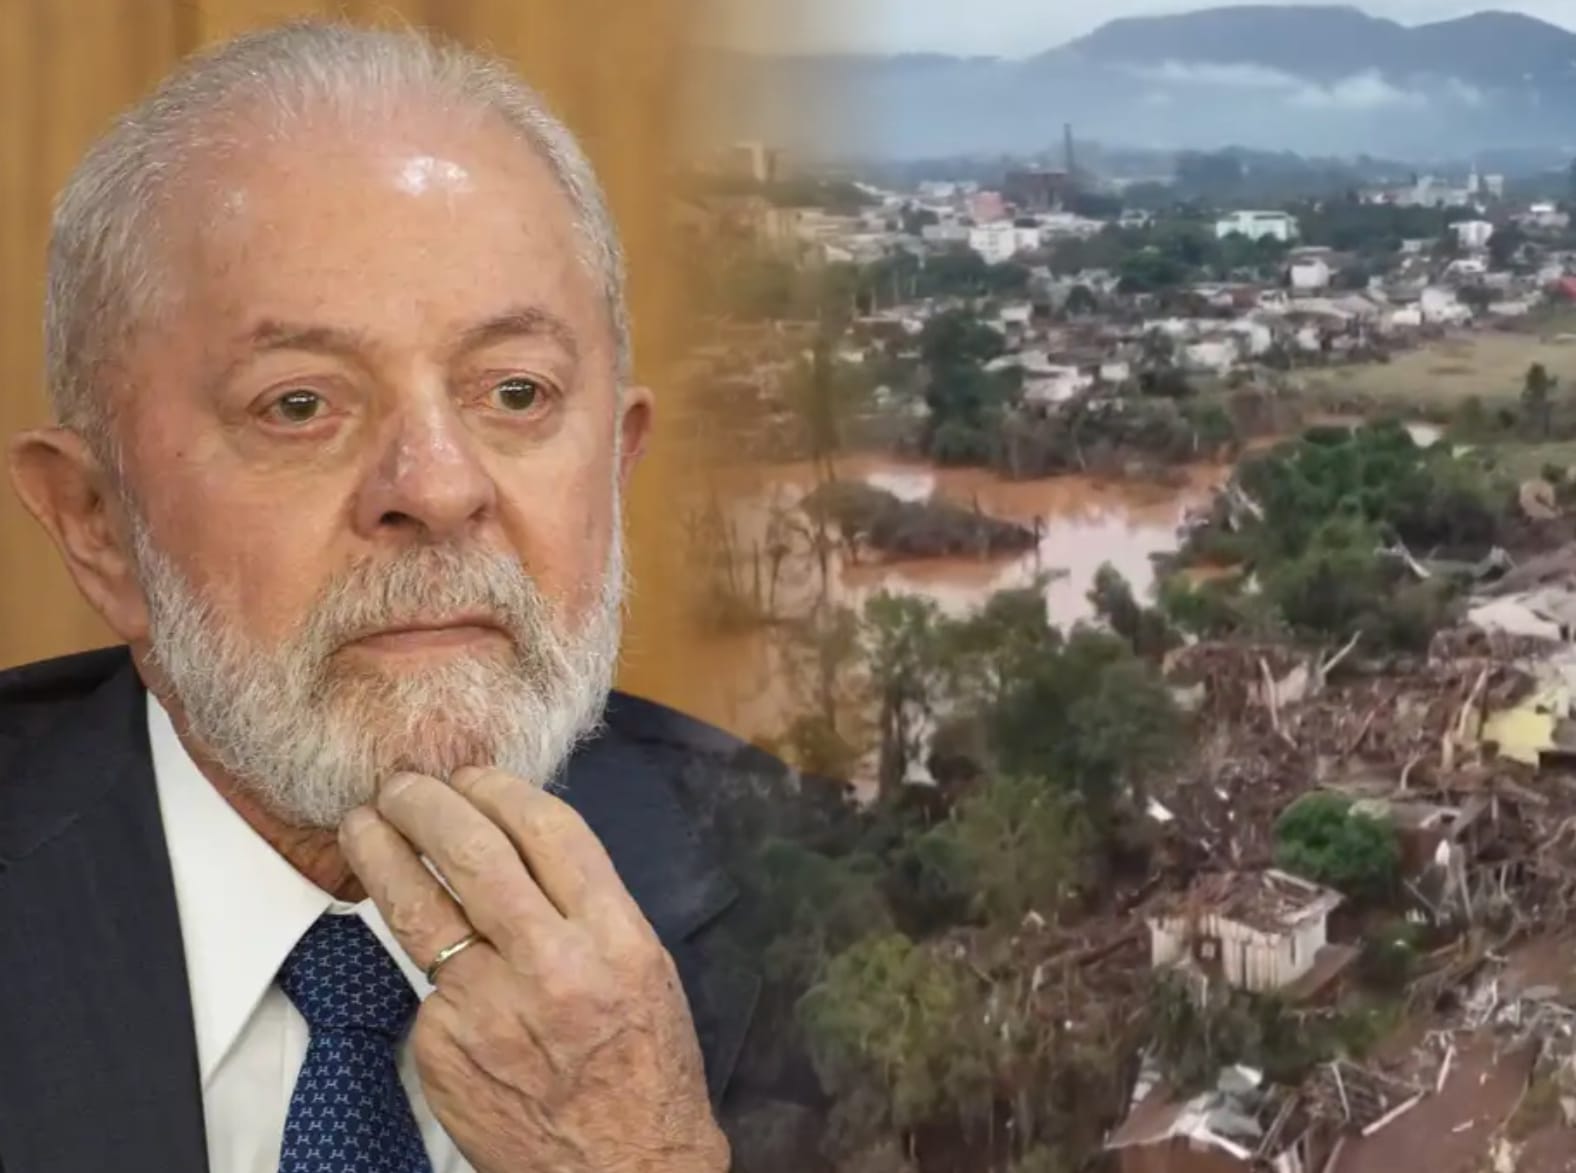 Emergência ignorada: Lula prioriza eventos globais em detrimento de crises nacionais